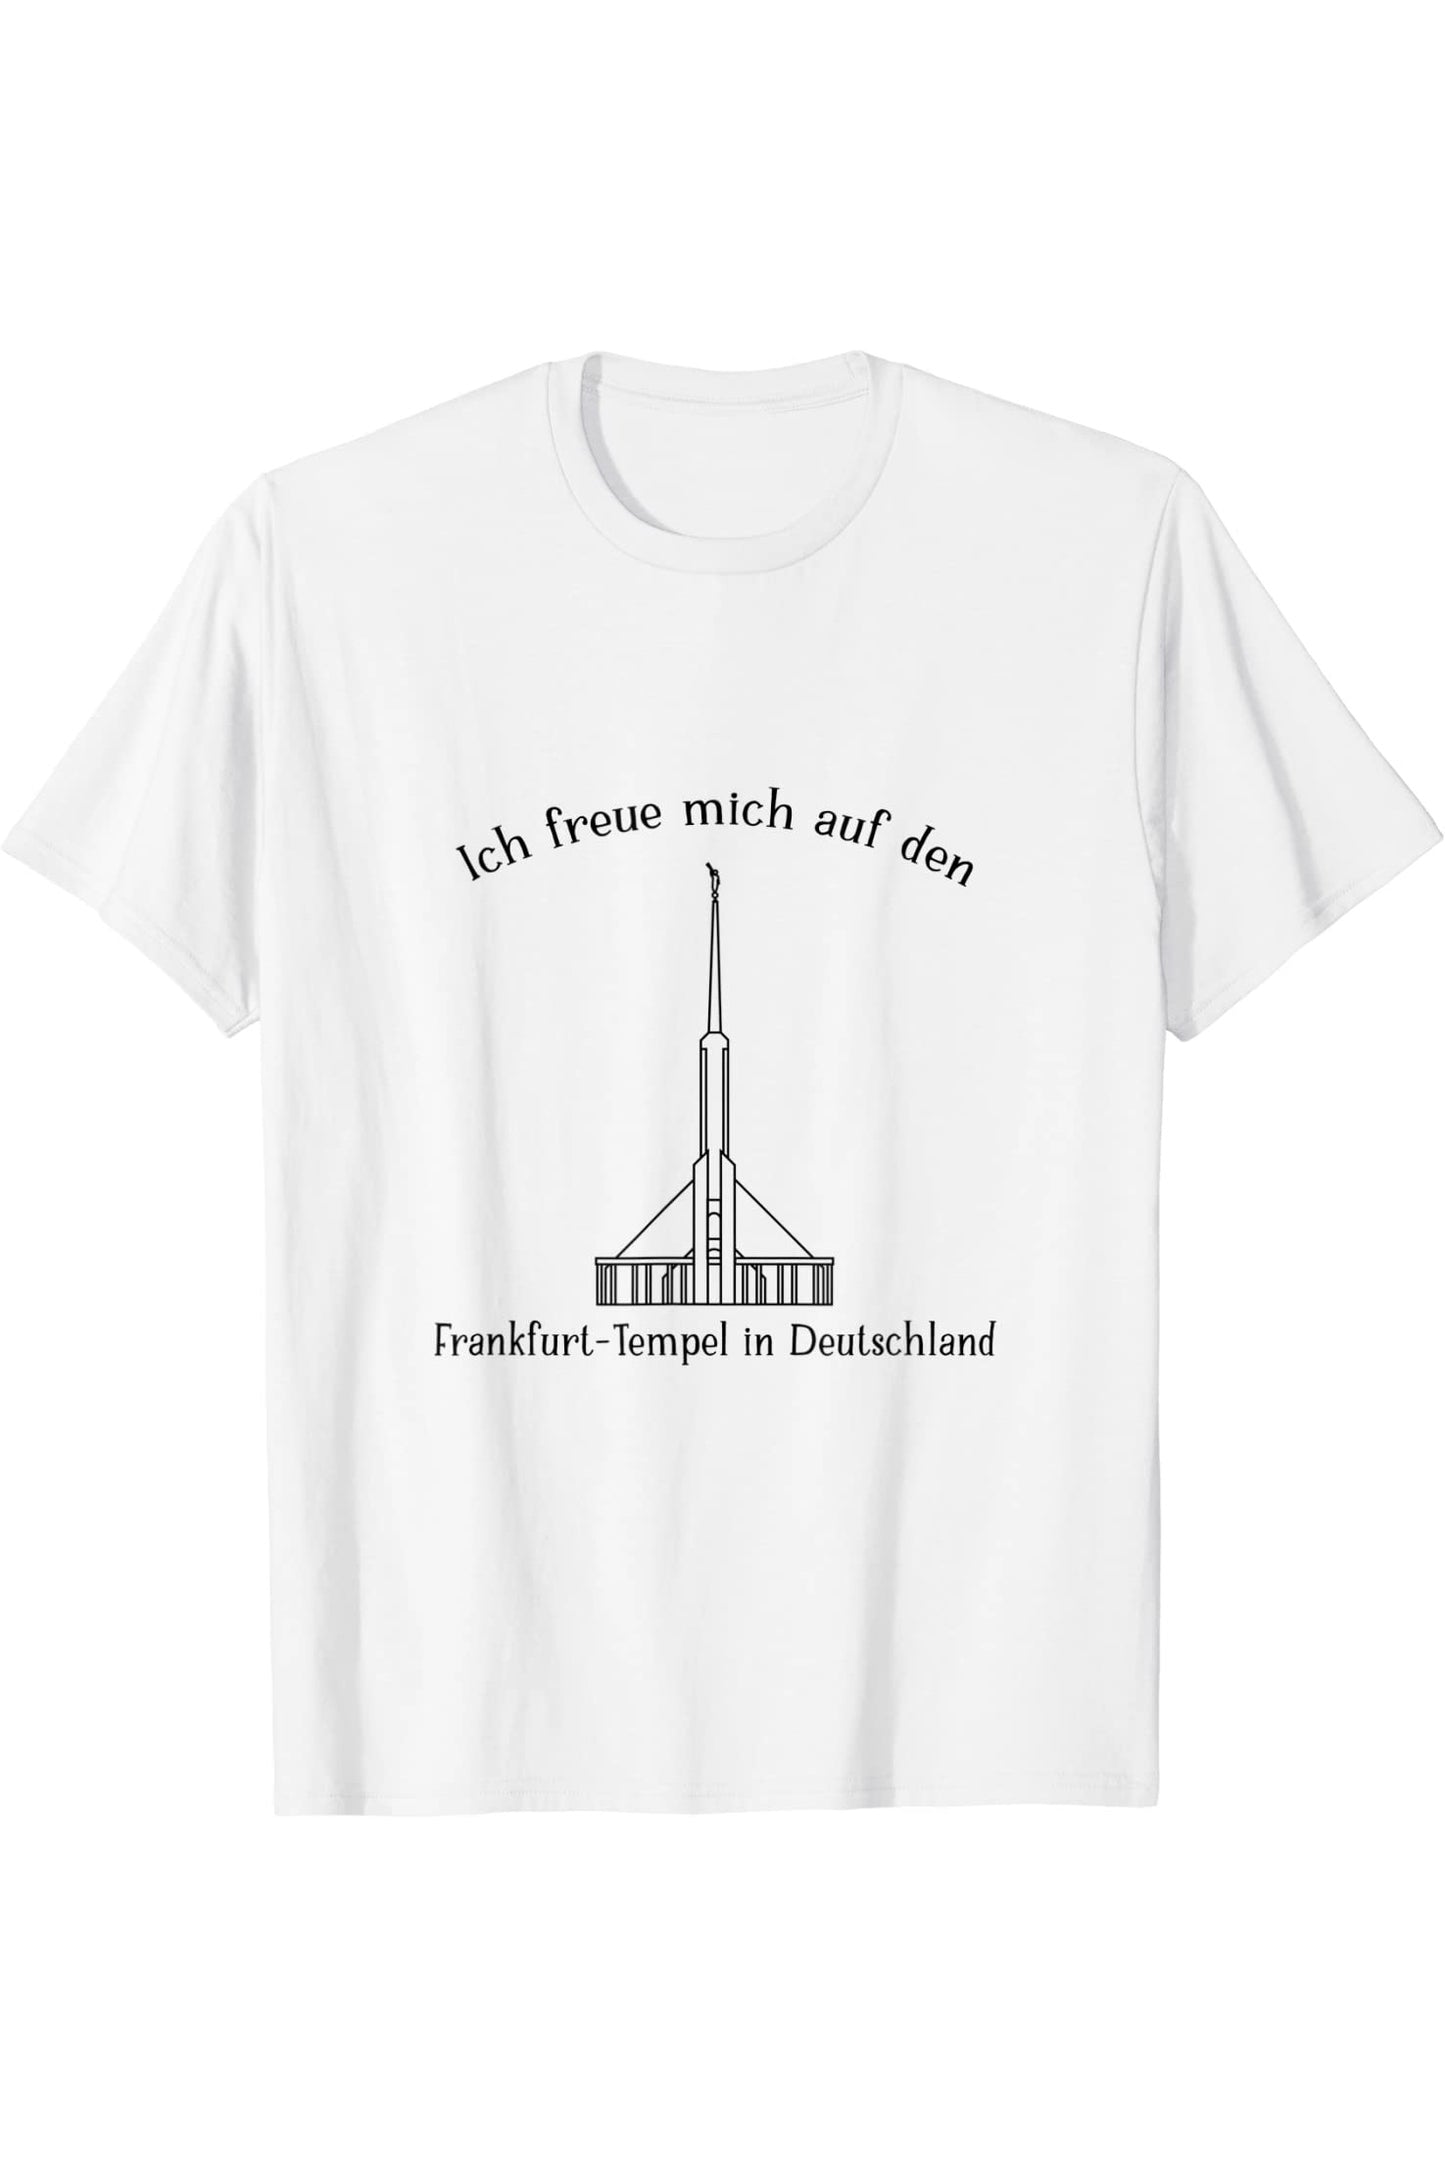 Bountiful Utah Temple, amo vedere il mio tempio (tedesco) T-Shirt